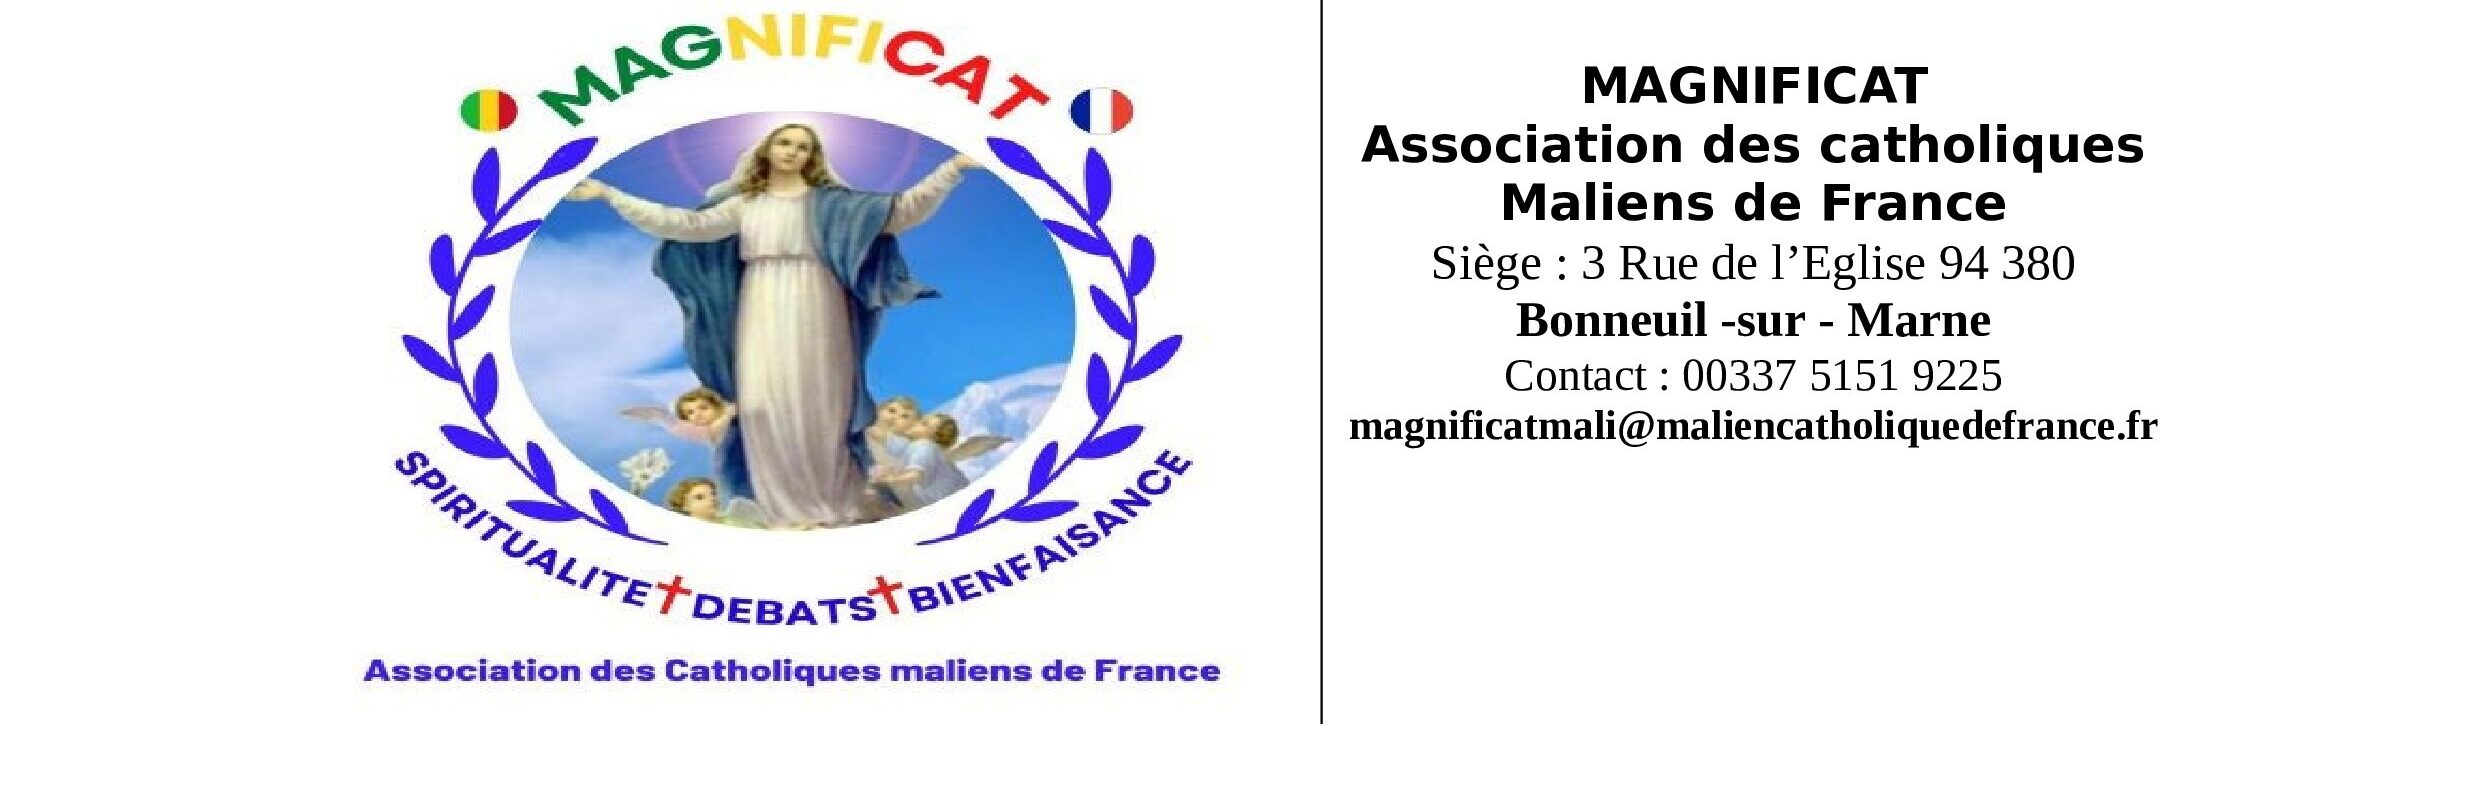 Magnificat Association Des Catholiques Maliens De France